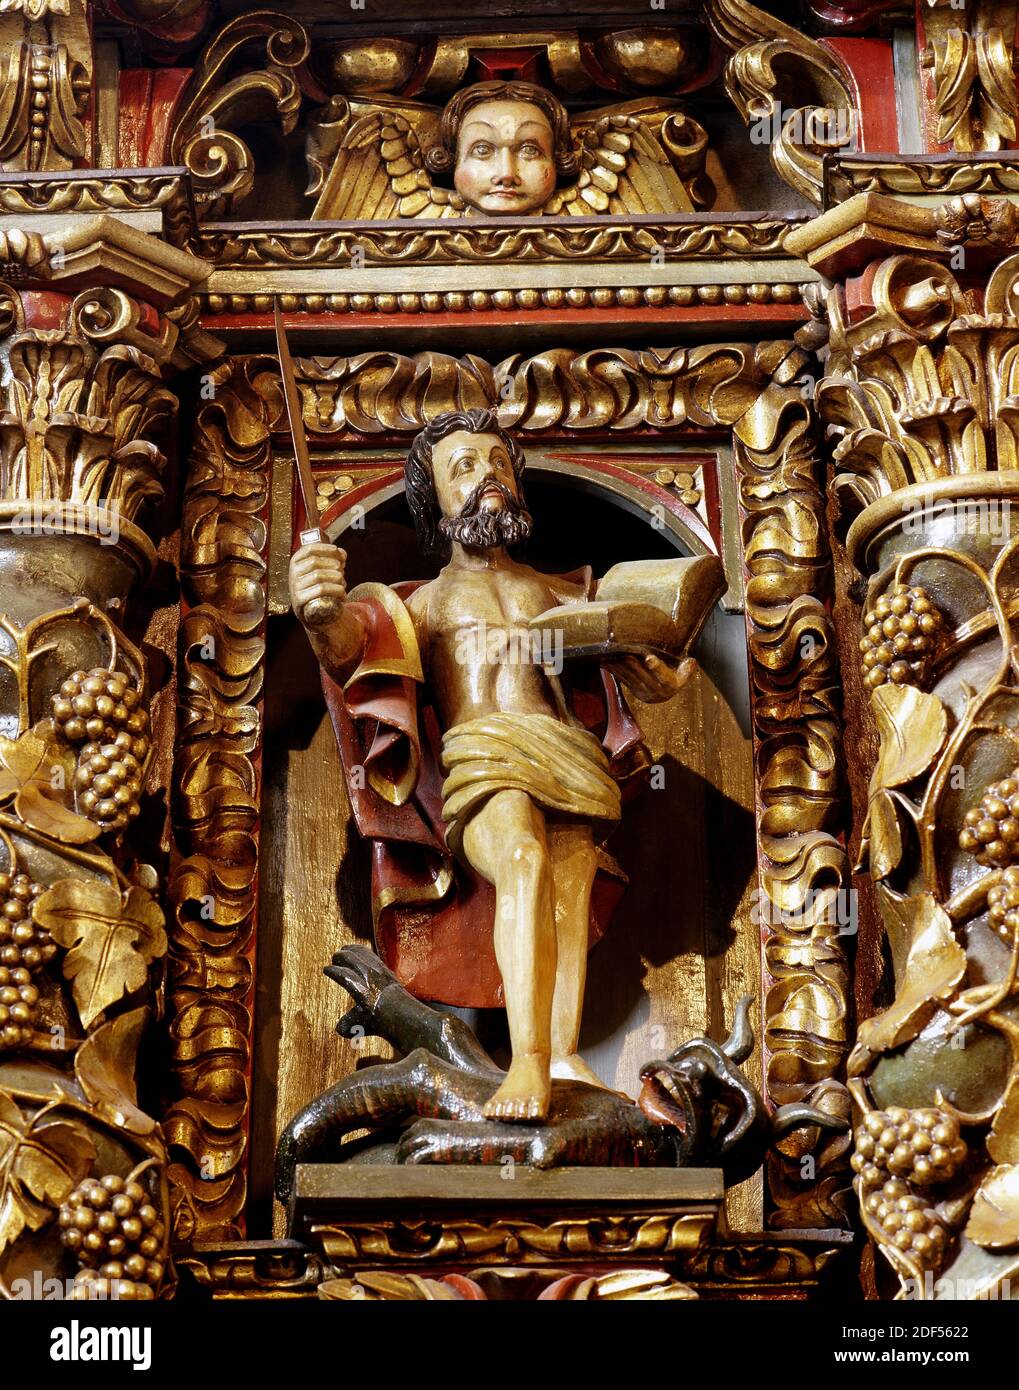 Spain, Galicia, Province of La Coruña, San Andres de Teixido (Santo Andre de Teixido). Sanctuary. Baroque altarpiece, 18th century, on the main altar, by Miguel Lopez de la Peña. Apostle Saint Paul. Stock Photo